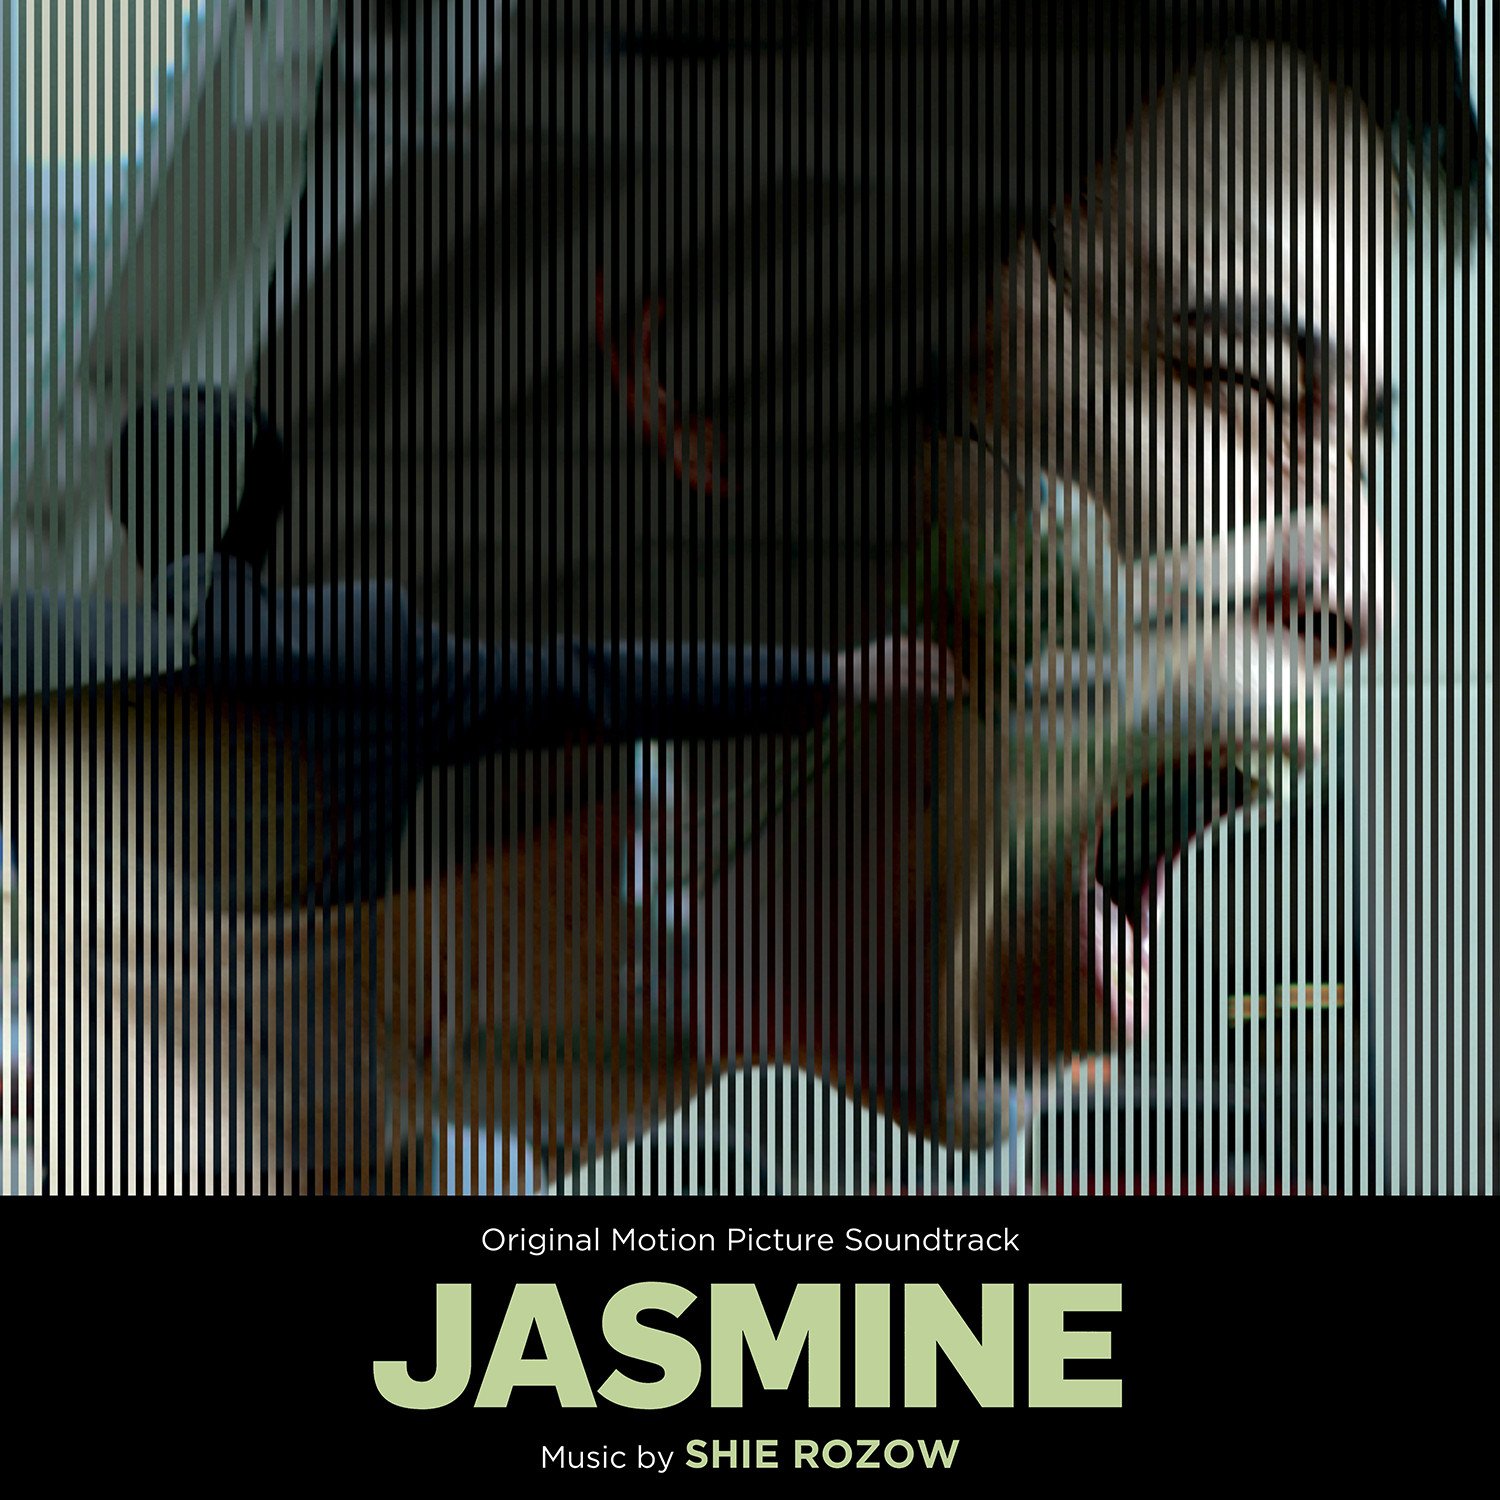 Jasmine (dition digitale uniquement)